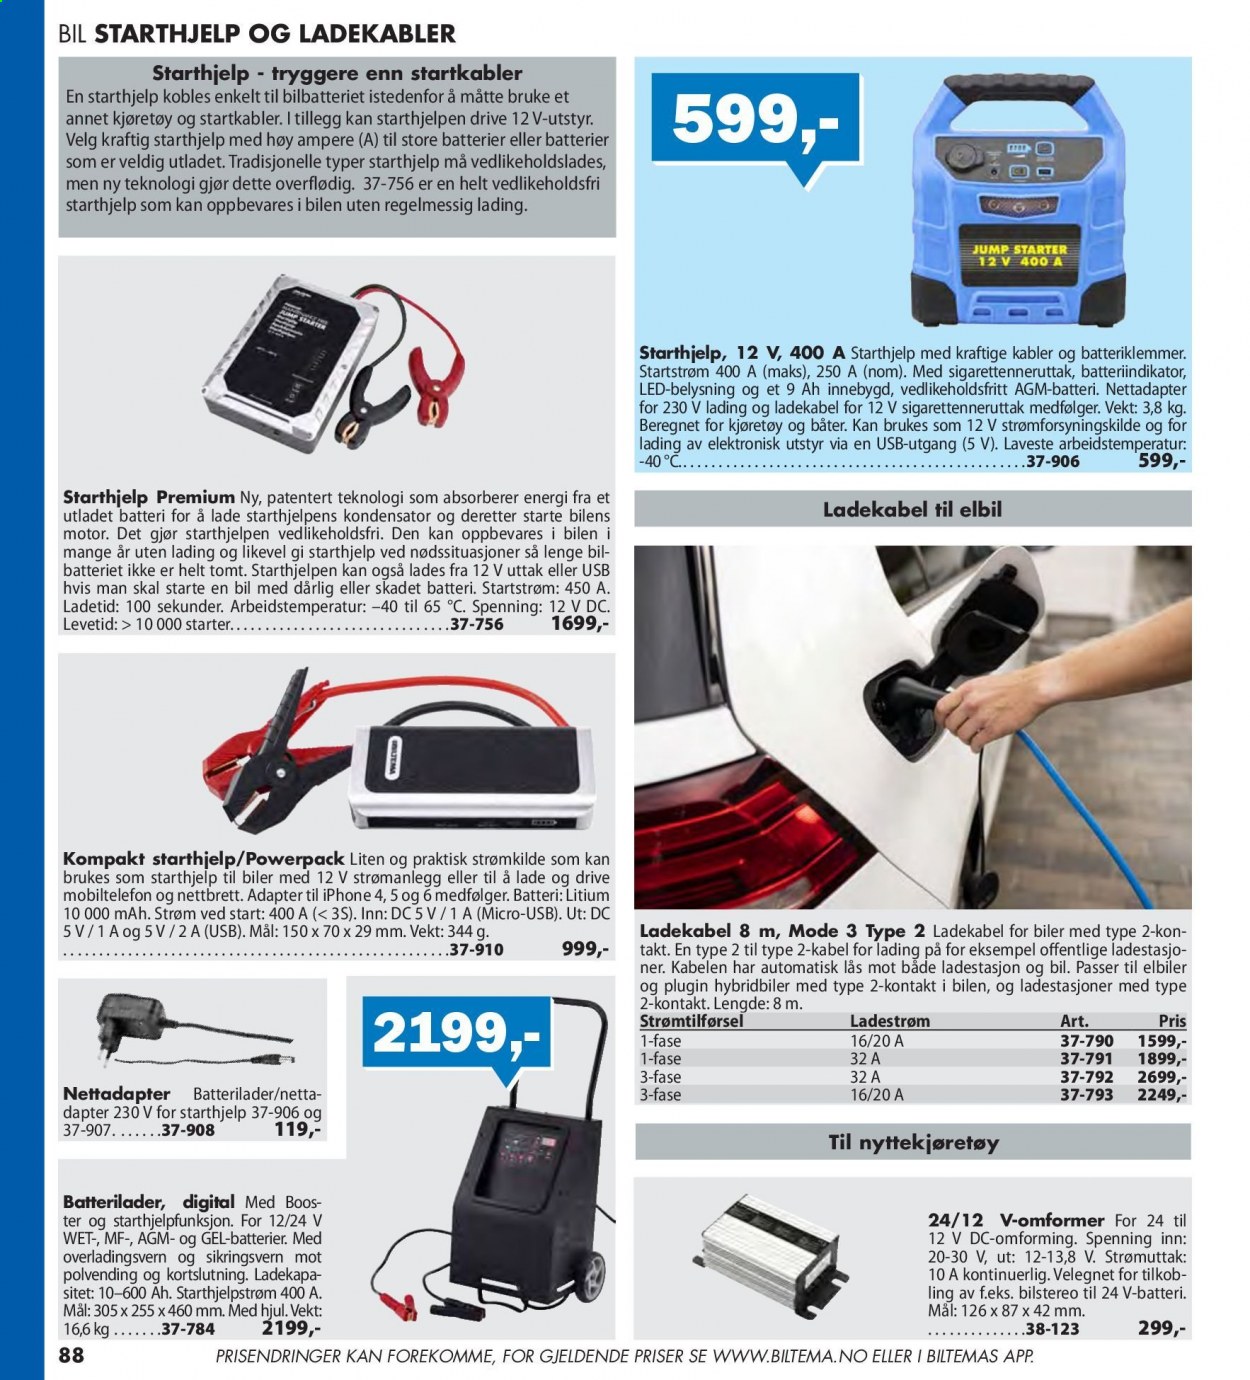 thumbnail - Kundeavis Biltema - Produkter fra tilbudsaviser - batterilader, iPhone, ladestasjon. Side 88.